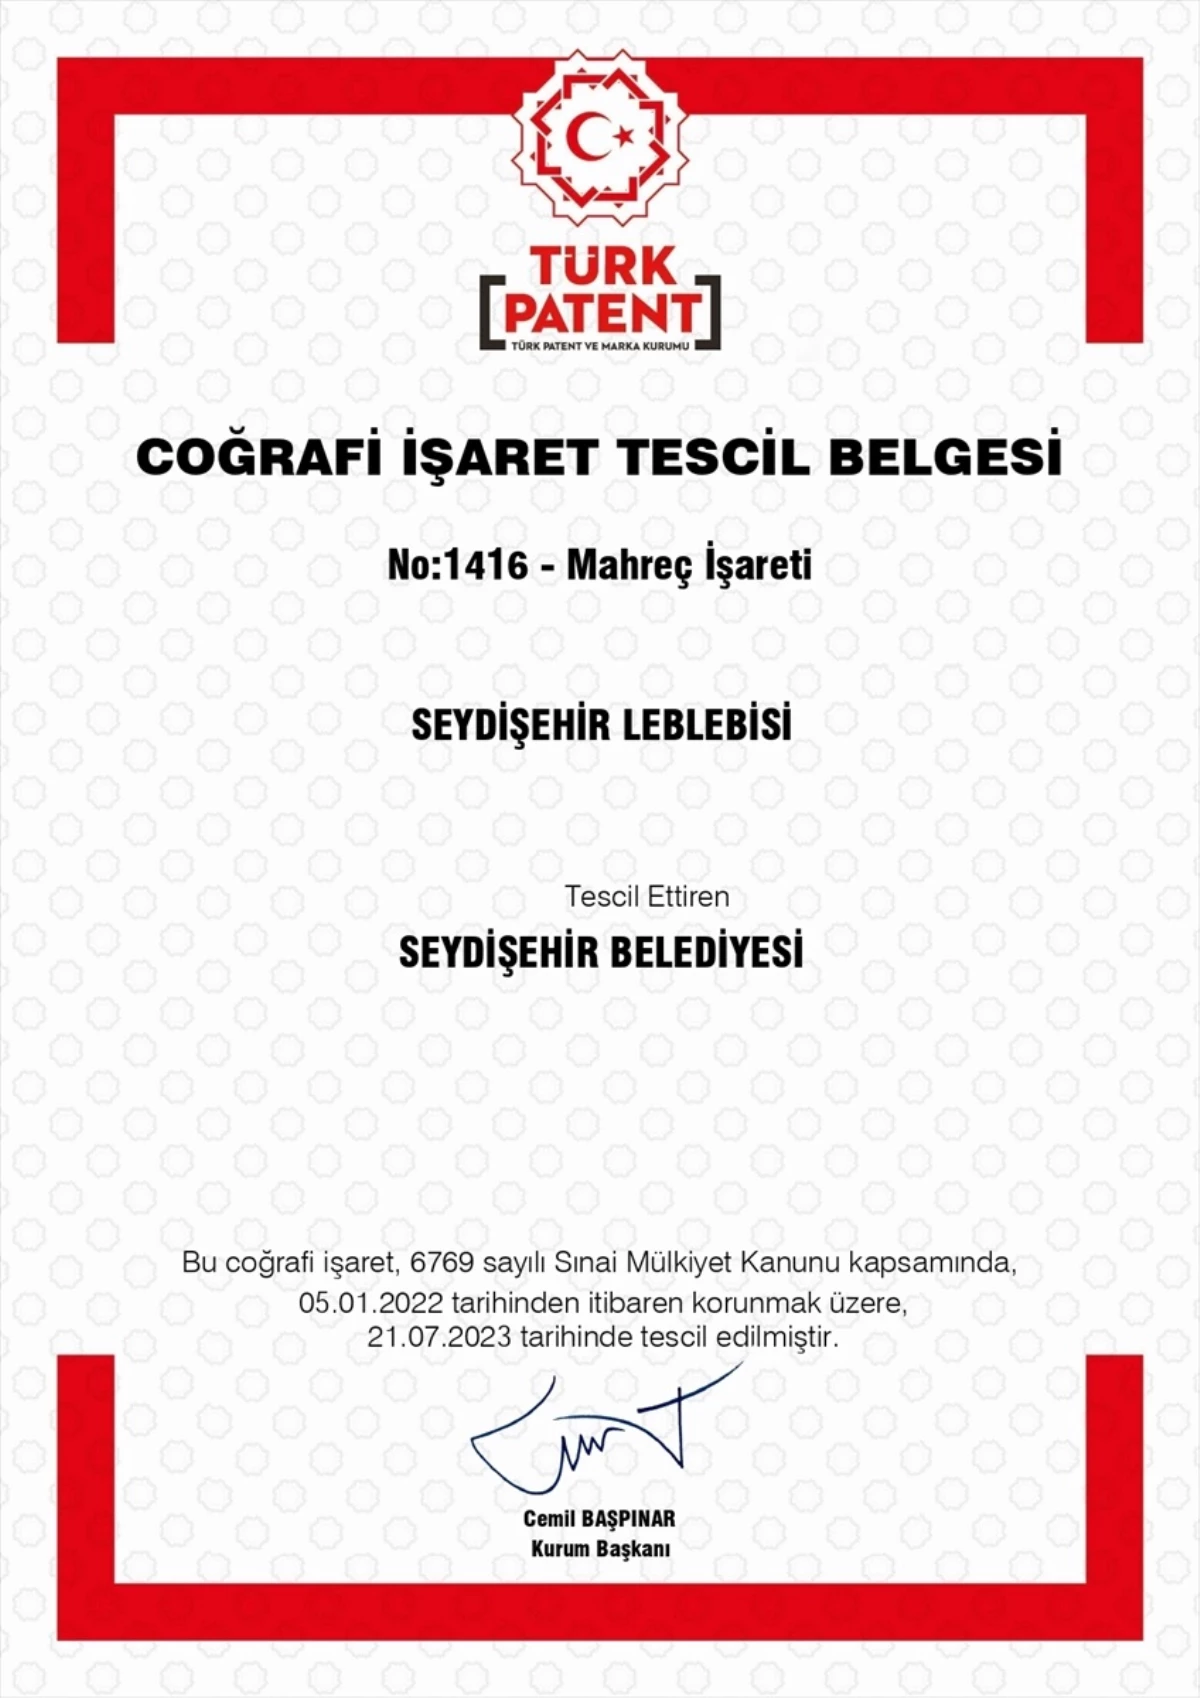 Seydişehir Leblebisi Türk Patent ve Marka Kurumu tarafından coğrafi işaret alarak tescillendi